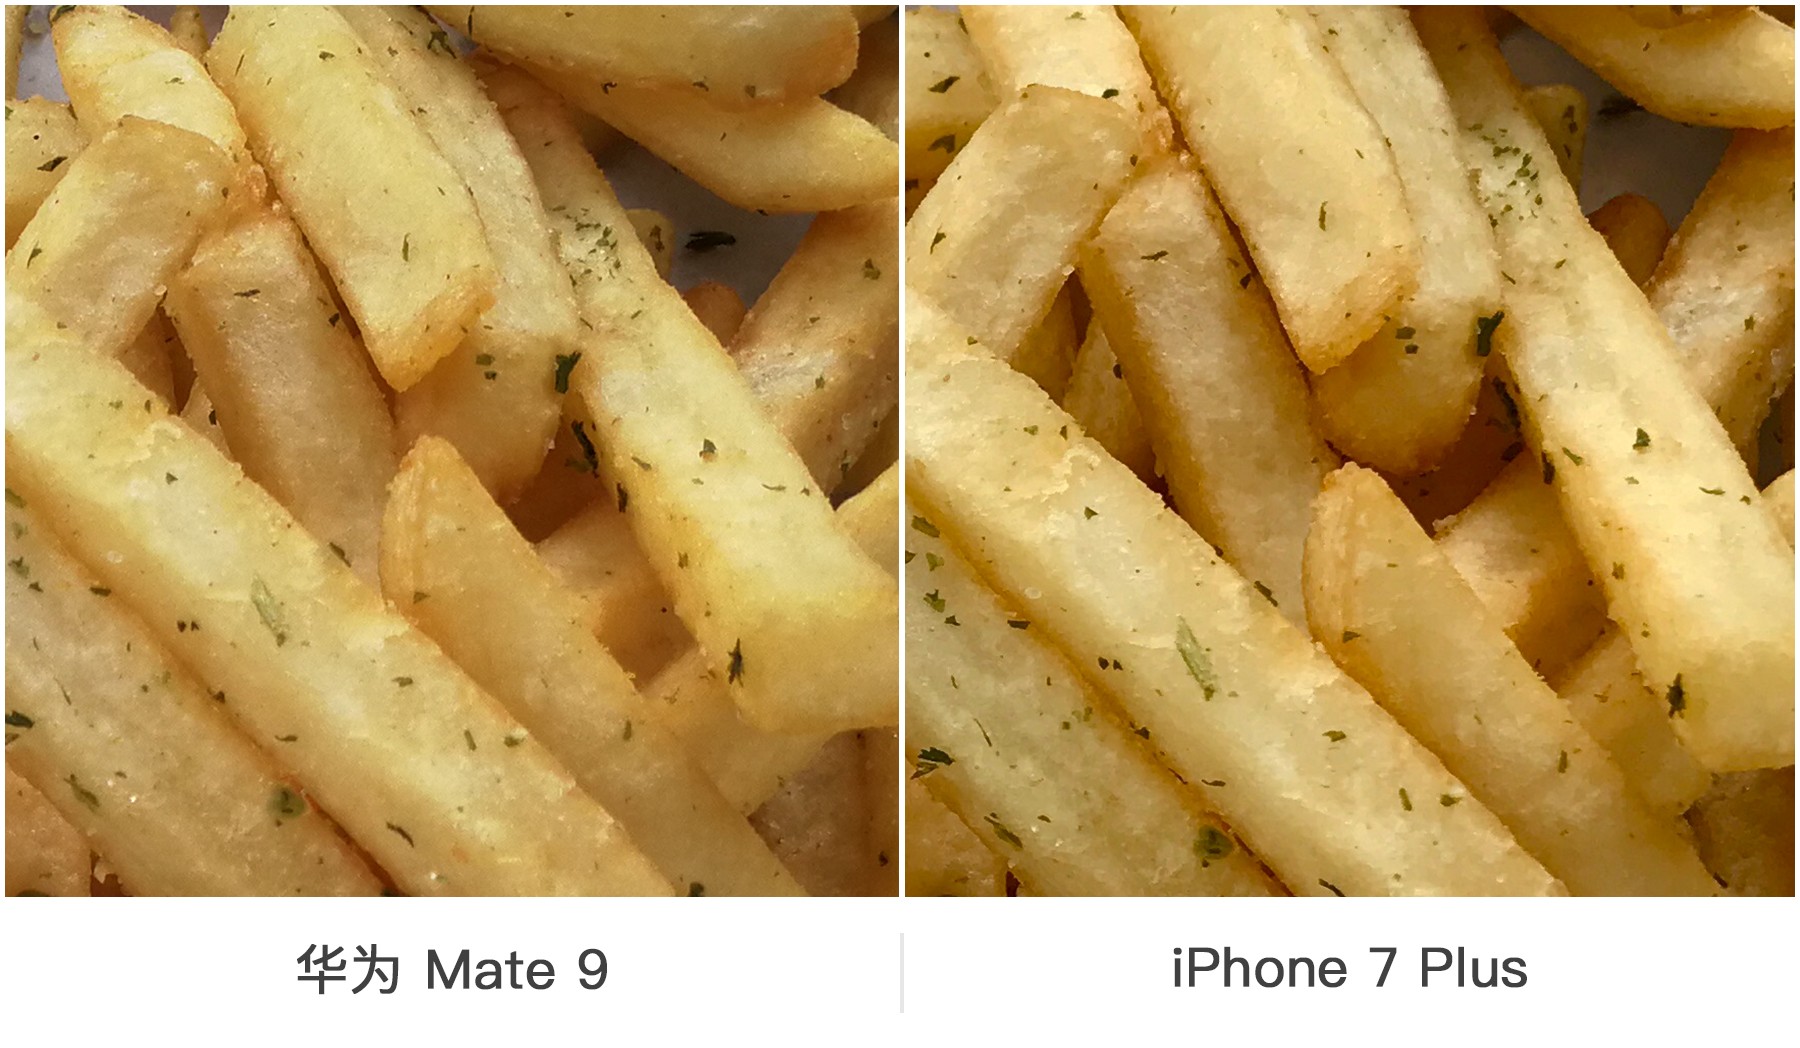 双摄之争 华为Mate 9与iPhone 7 Plus拍照对比 智能公会